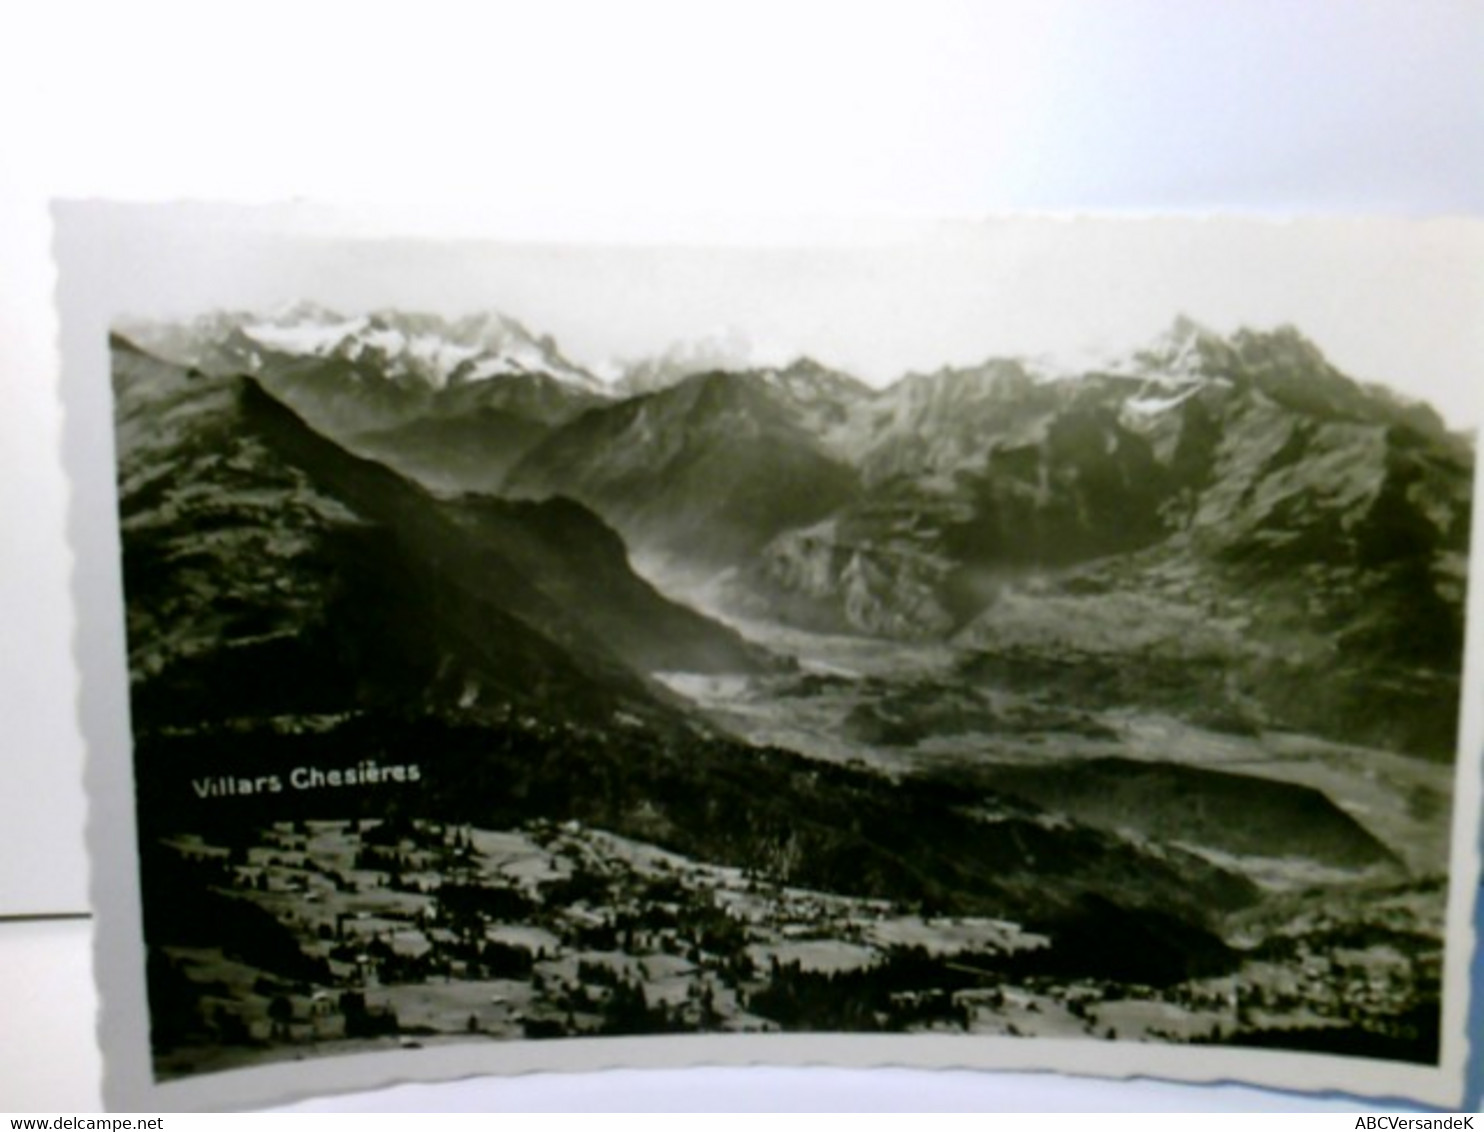 Villars Chesieres. Schweiz. Alte Ansichtskarte / Postkarte S/w. Ungel. Um 1935 ?. Blick Ins Tale Zum Ort, Gebi - Villars-les-Moines